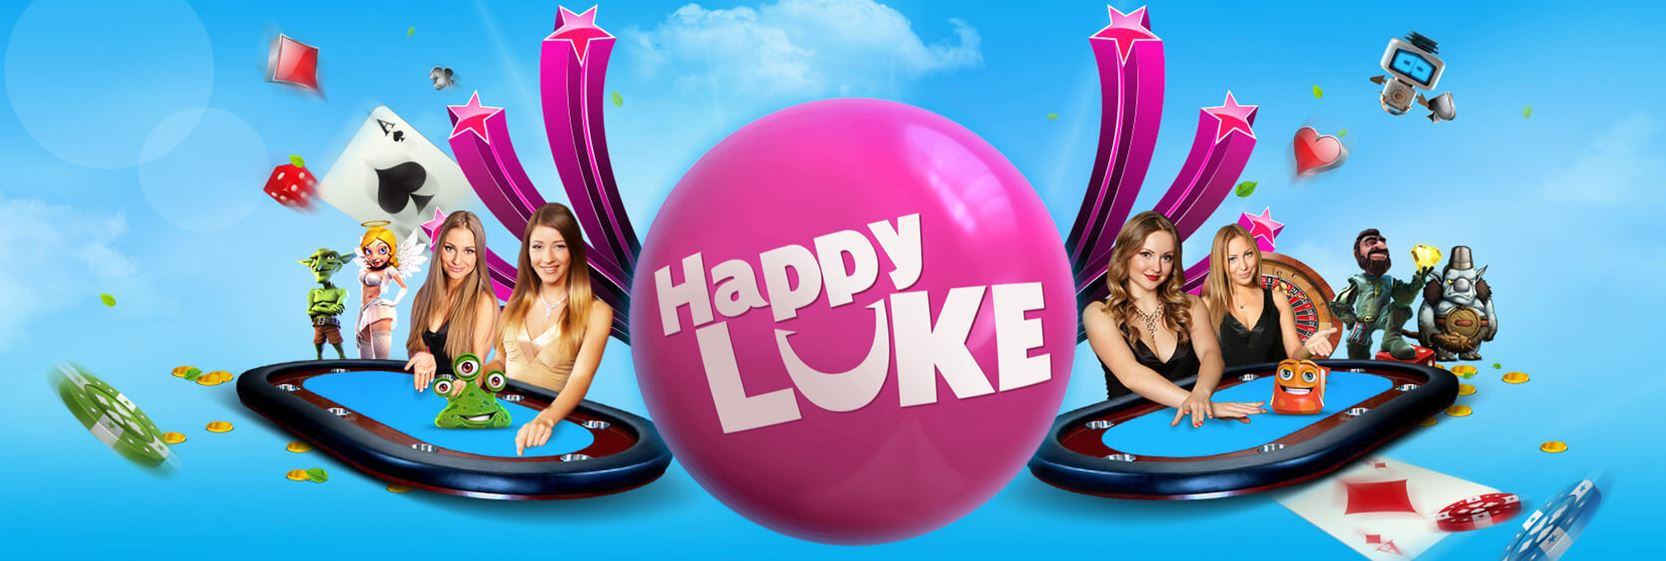 Happy Luke mở Khuyến mãi siêu đặc biệt chào mừng thành viên mới 3